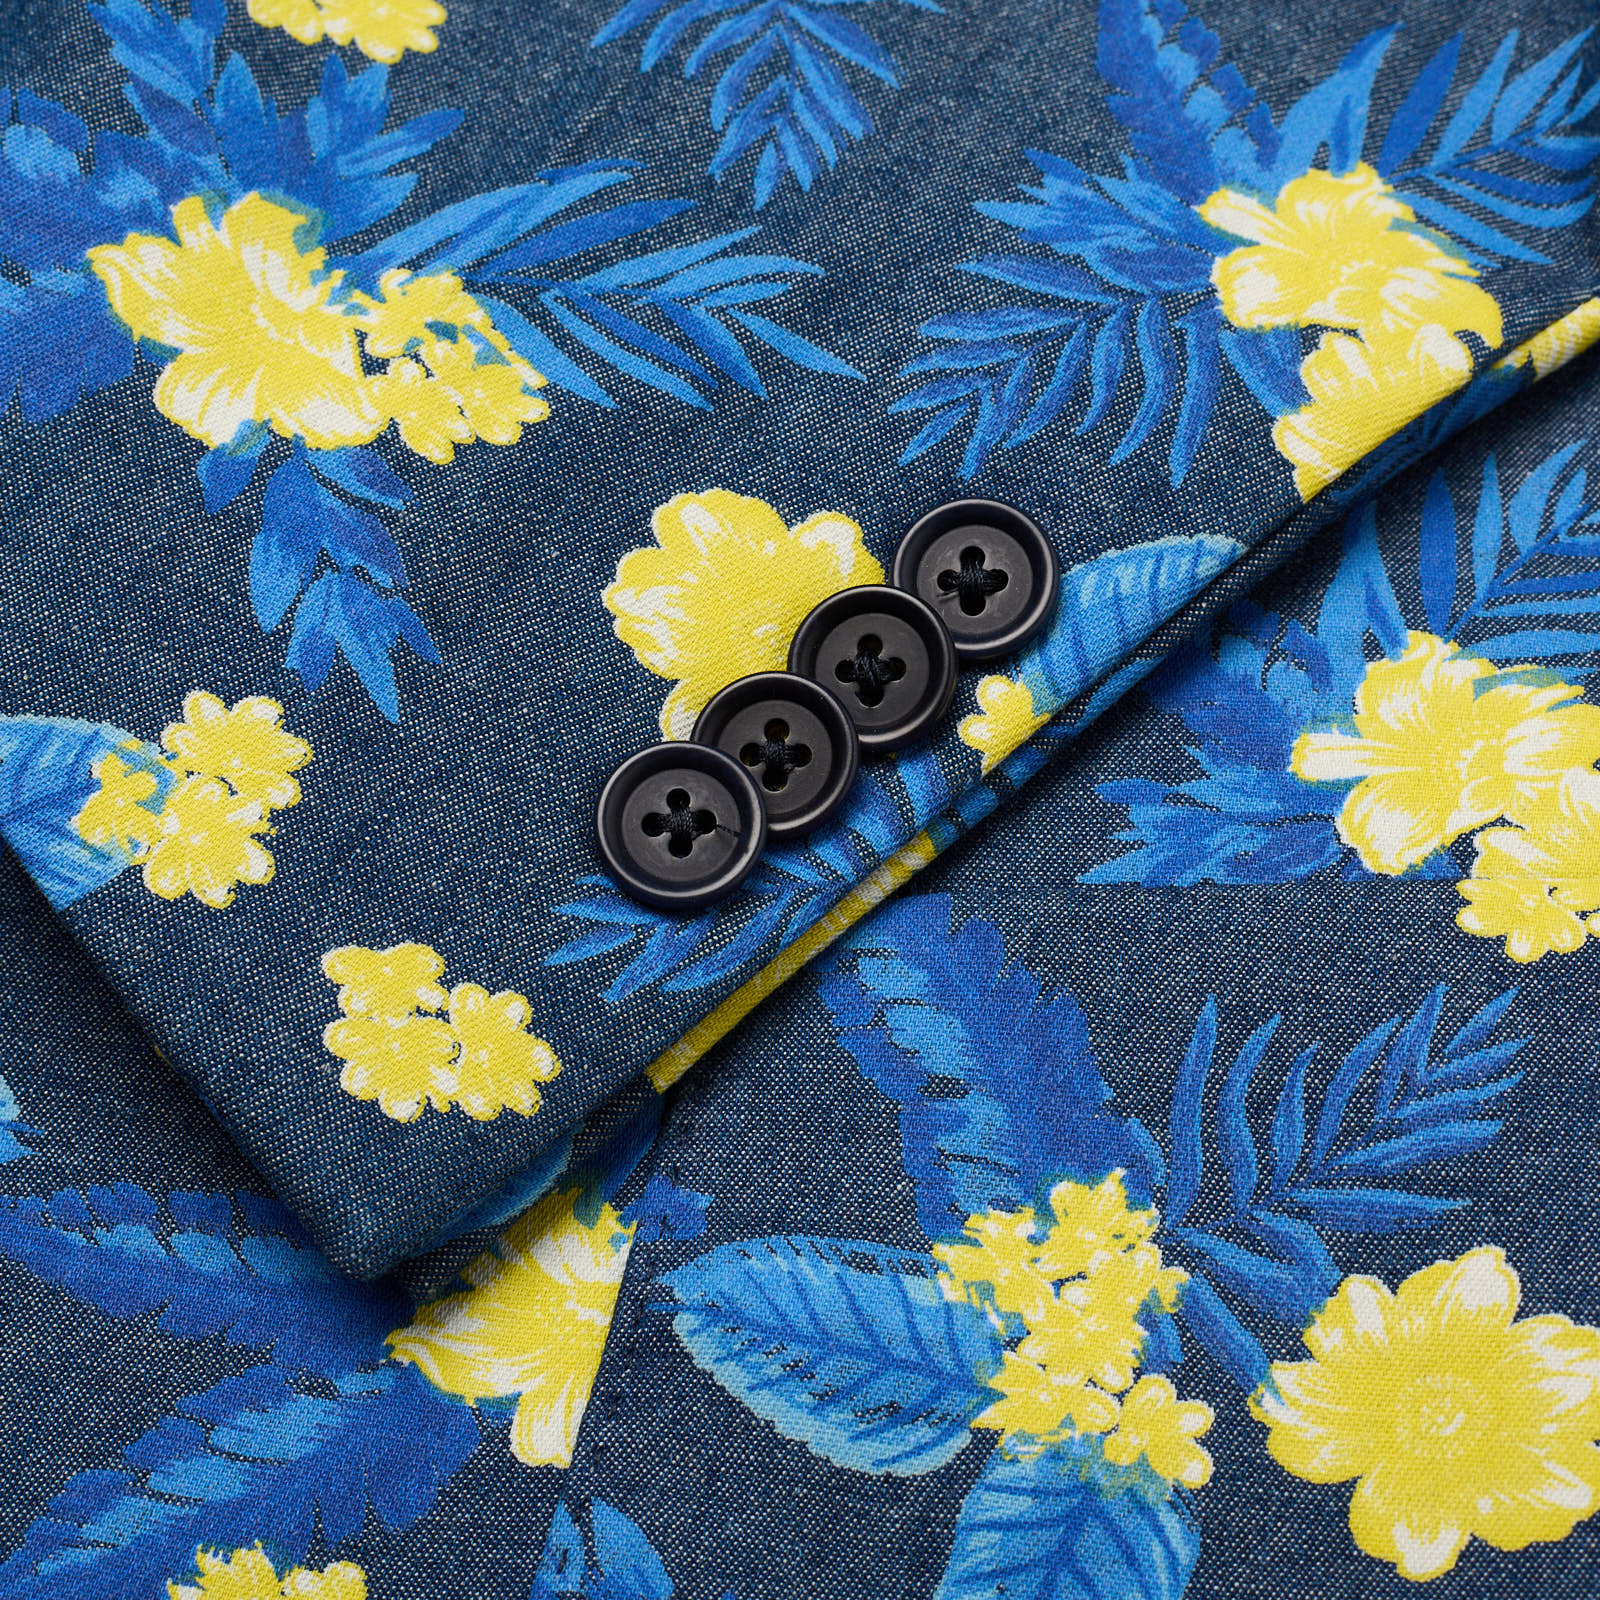 SARTORIA PARTENOPEA Blue-Yellow Floral Design Cotton Jacket EU 52 NEW US 42 Current Model